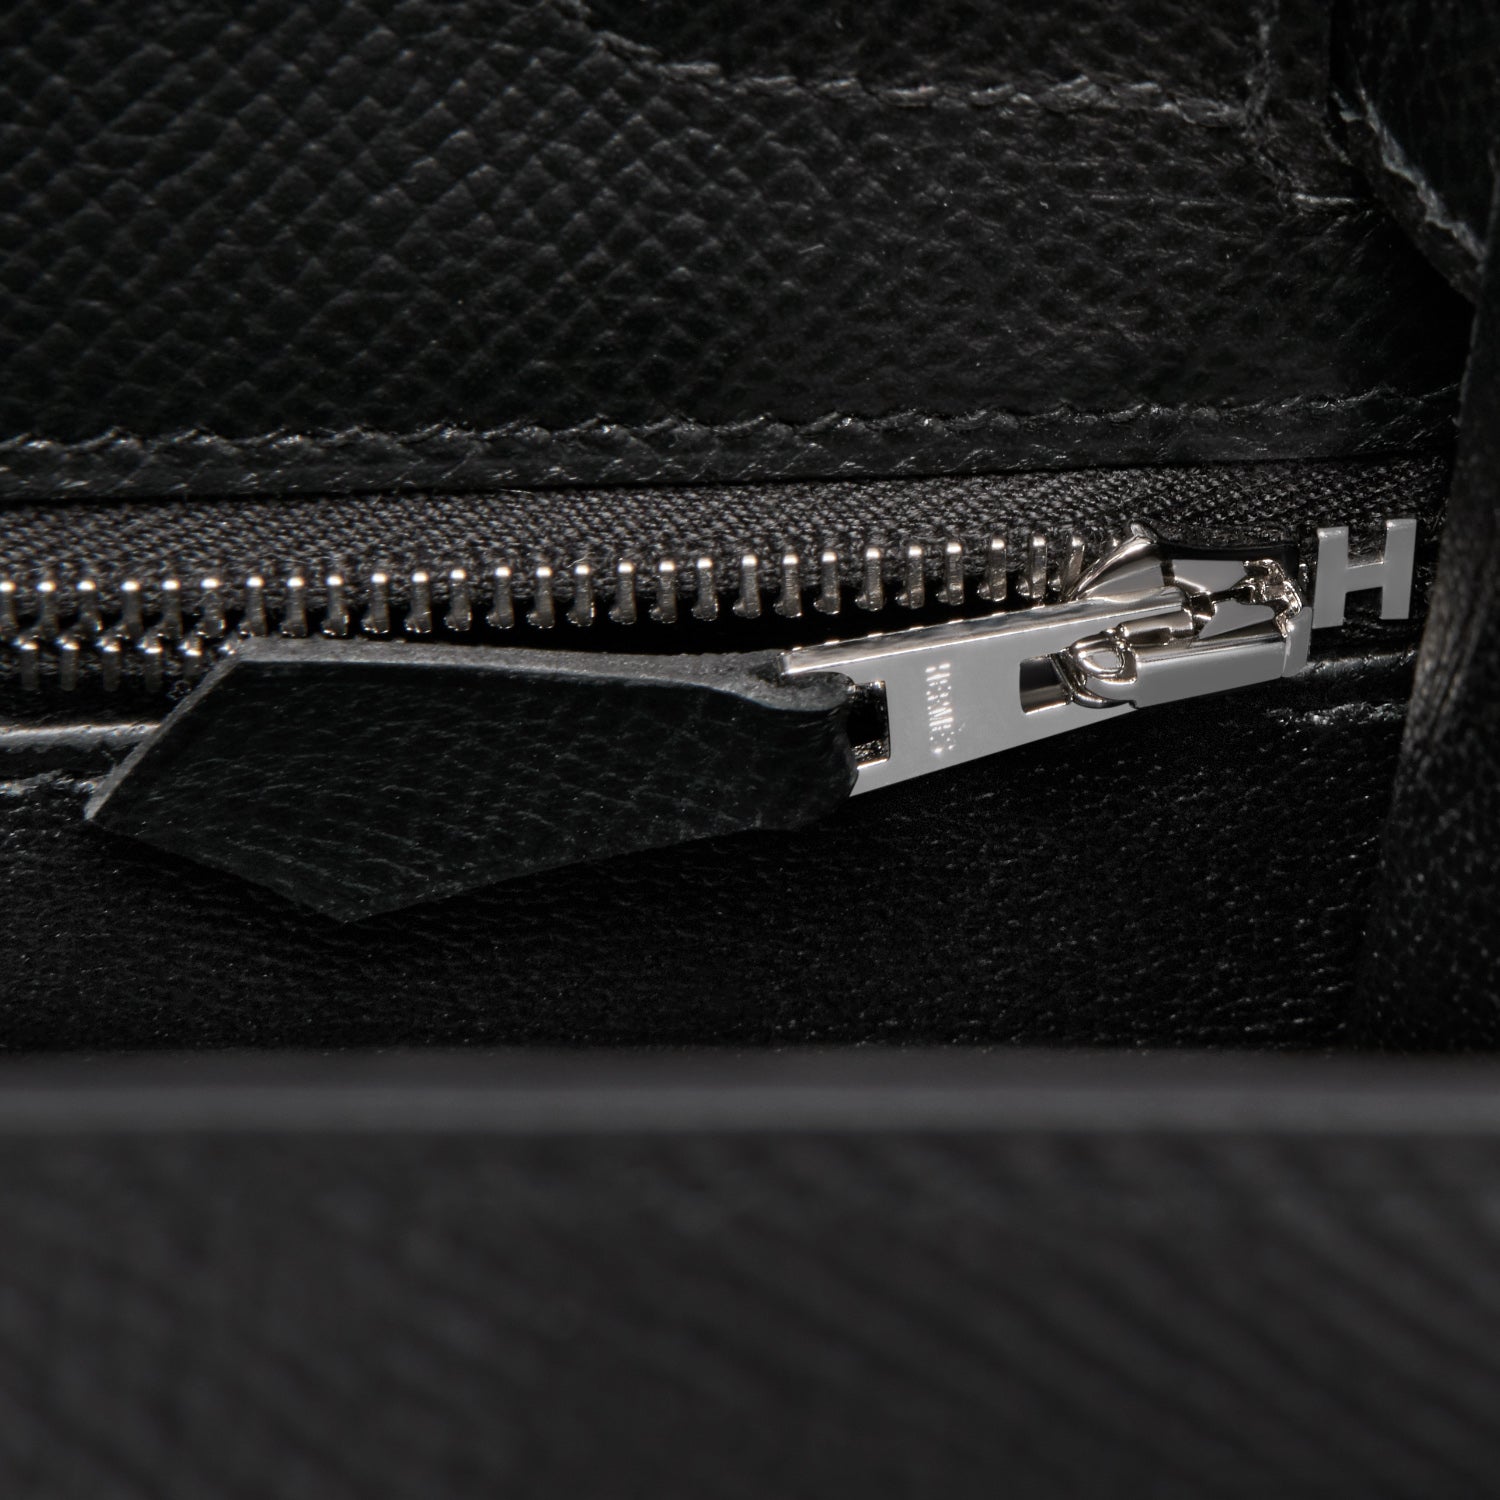 Hermes Kelly Sellier Rigide 28CM Bag Epsom Leather Palladium Hardware, CK89  Noir